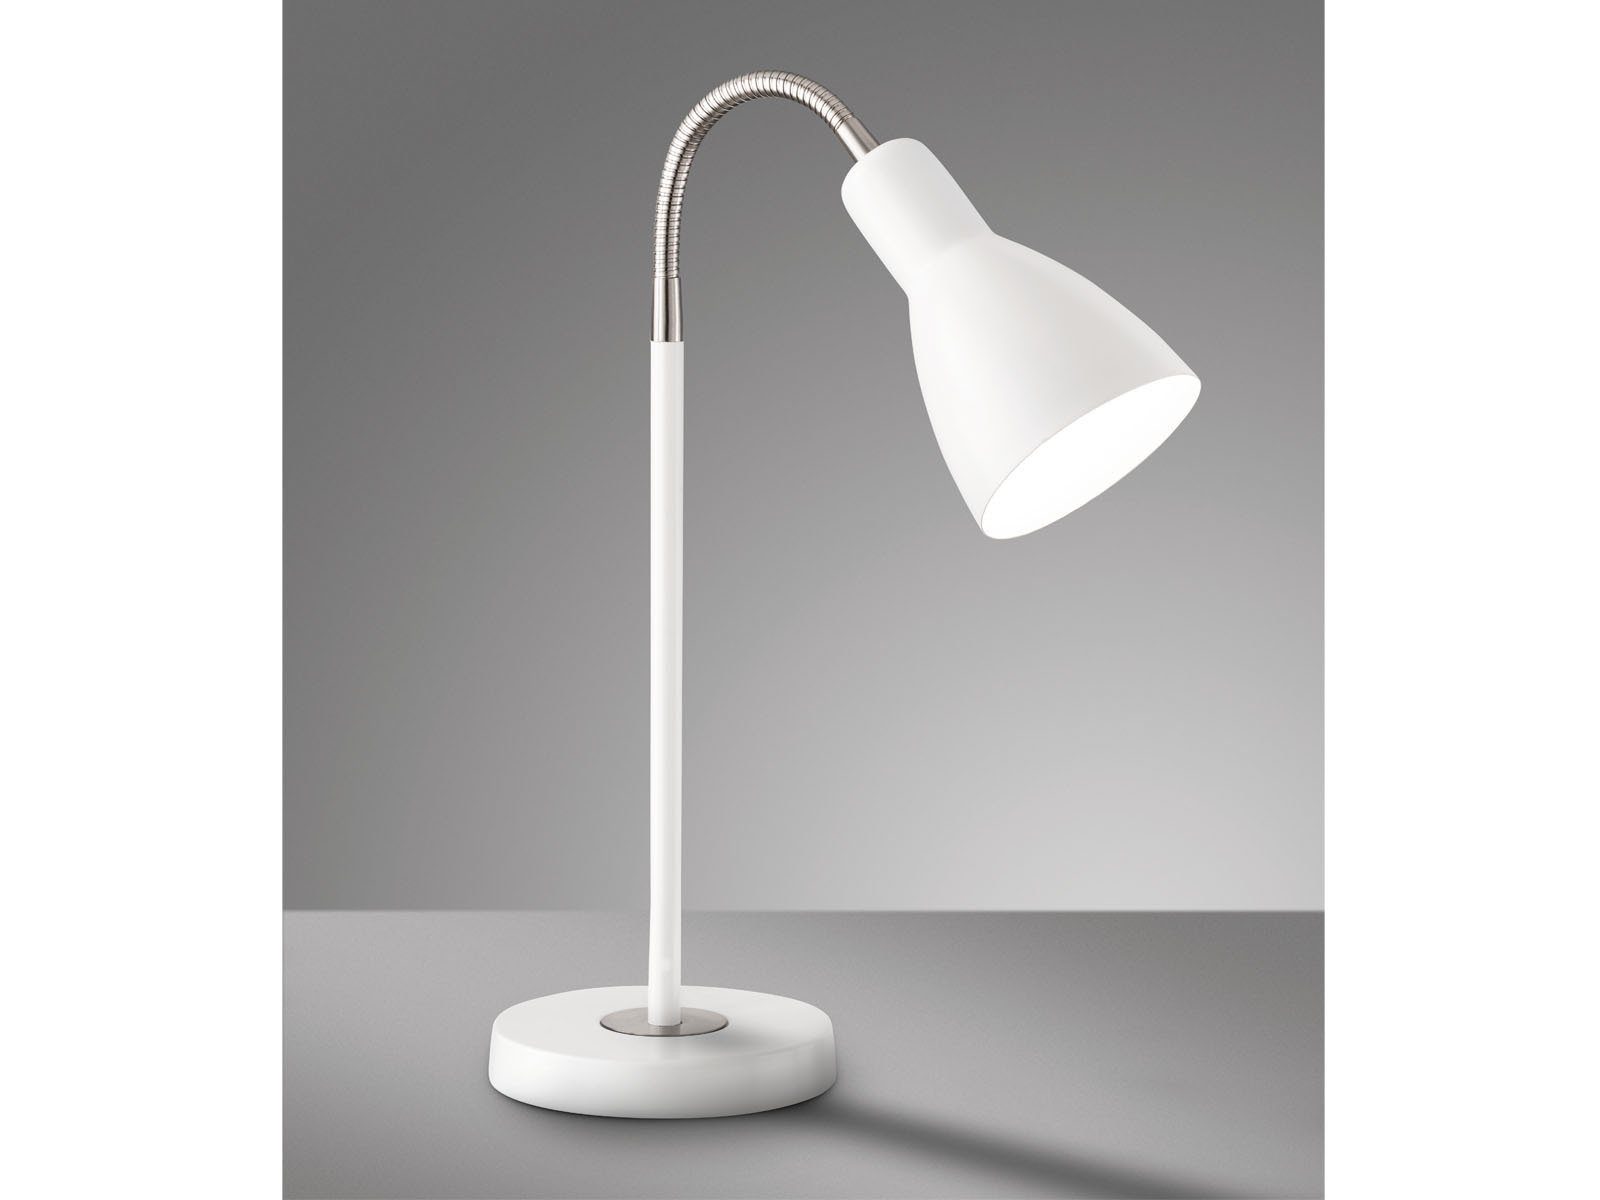 LED Tisch Lampe Metall flexibler Arm Schirm grau Innen Raum Leuchte Beleuchtung 